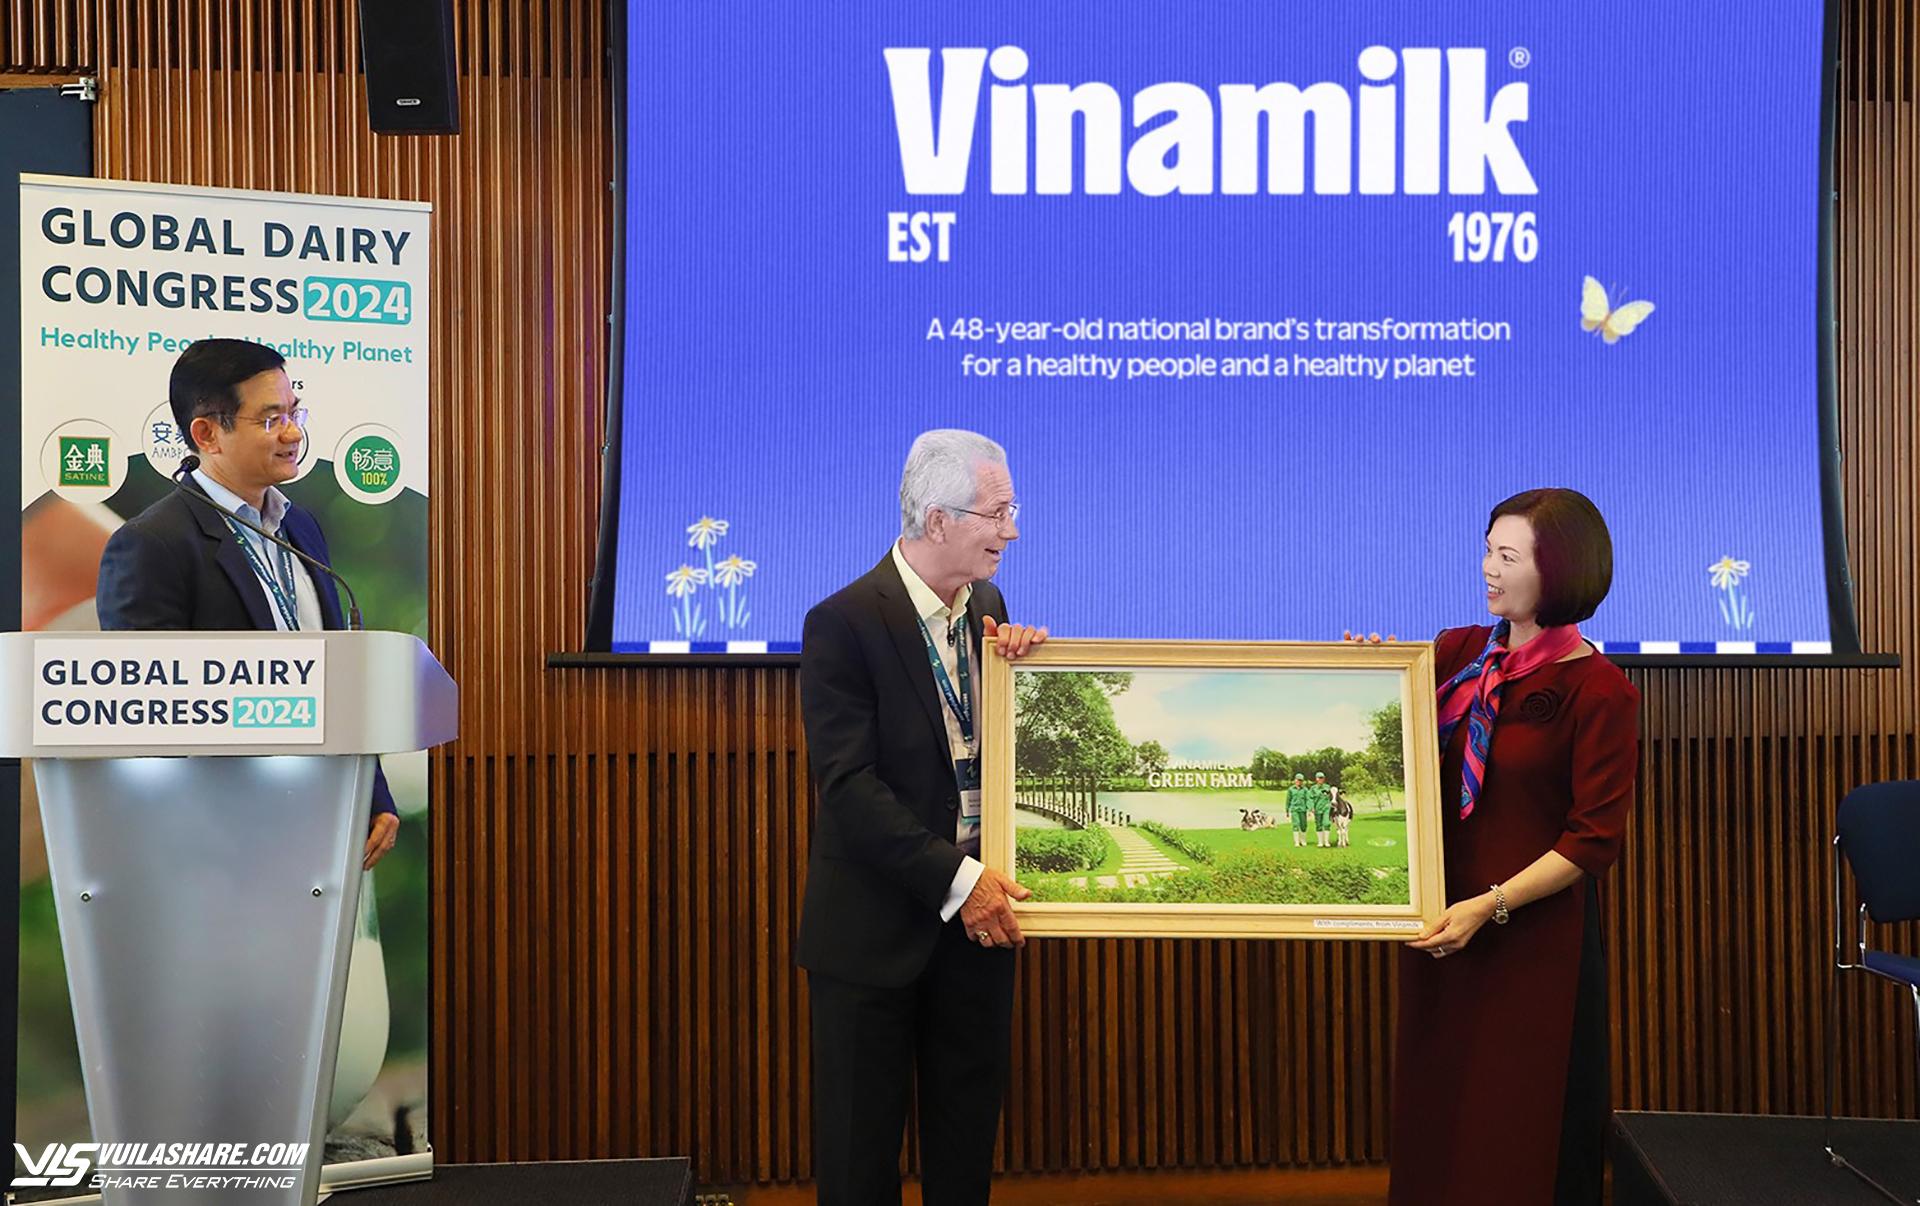 Đại diện Vinamilk trao tặng bức tranh trang trại Green Farm của Vinamilk đến chủ tịch hội nghị sữa toàn cầu - ông Richard Hall (bên trái)